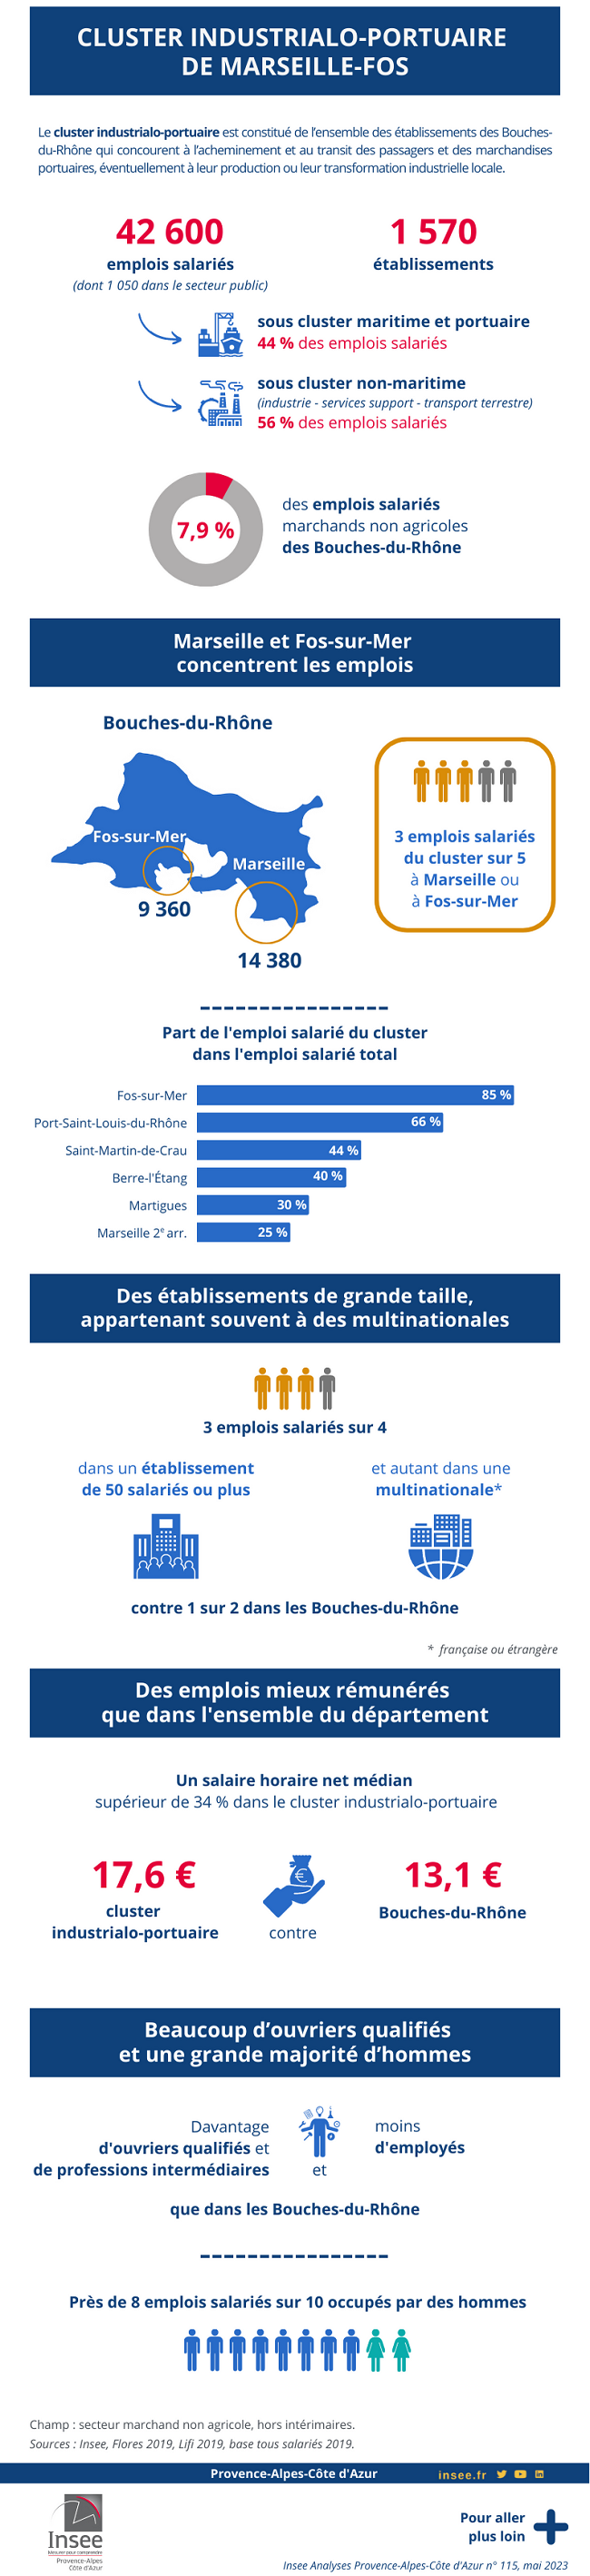 Cluster industrialo-portuaire de Marseille-Fos : 42 600 emplois salariés